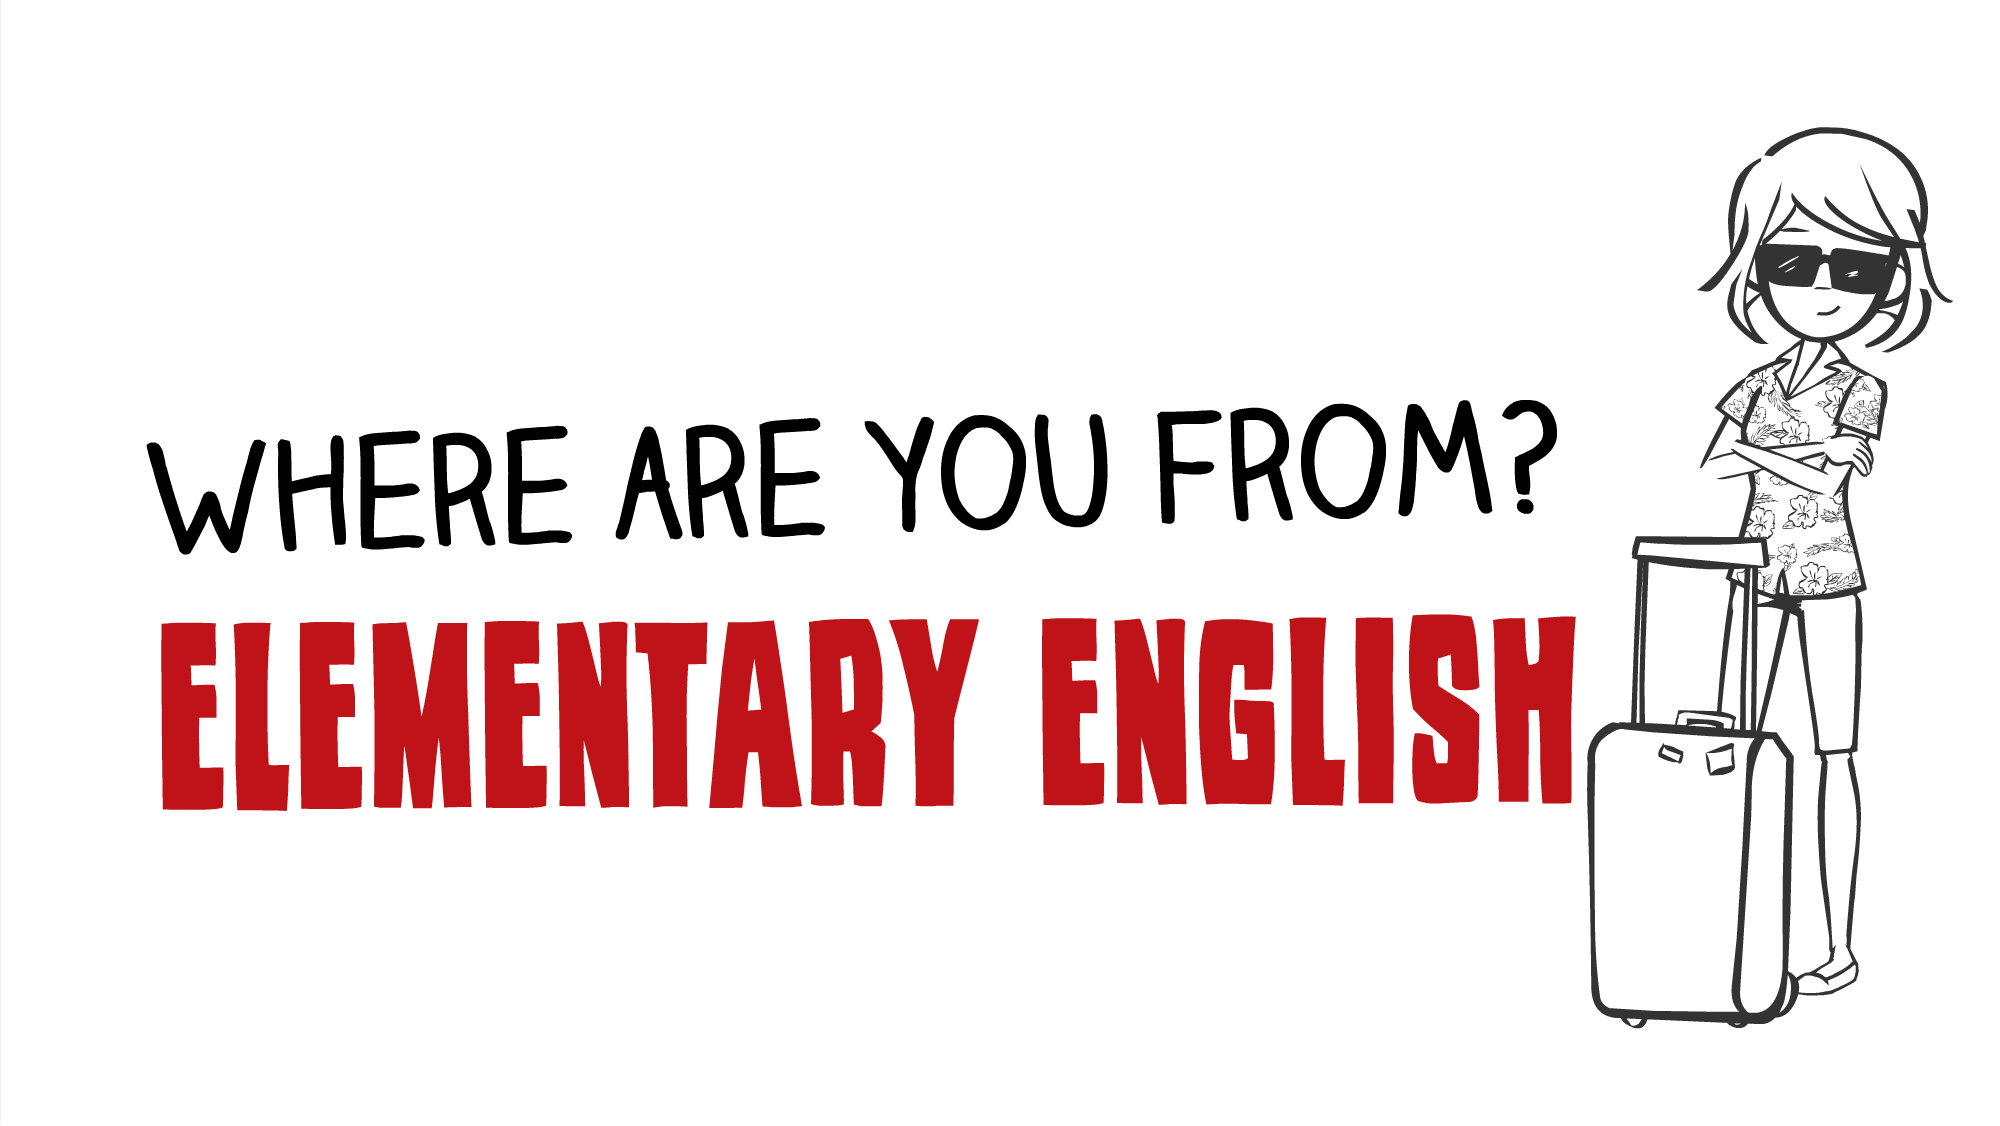 Откуда вы? - обучение английскому языку онлайн